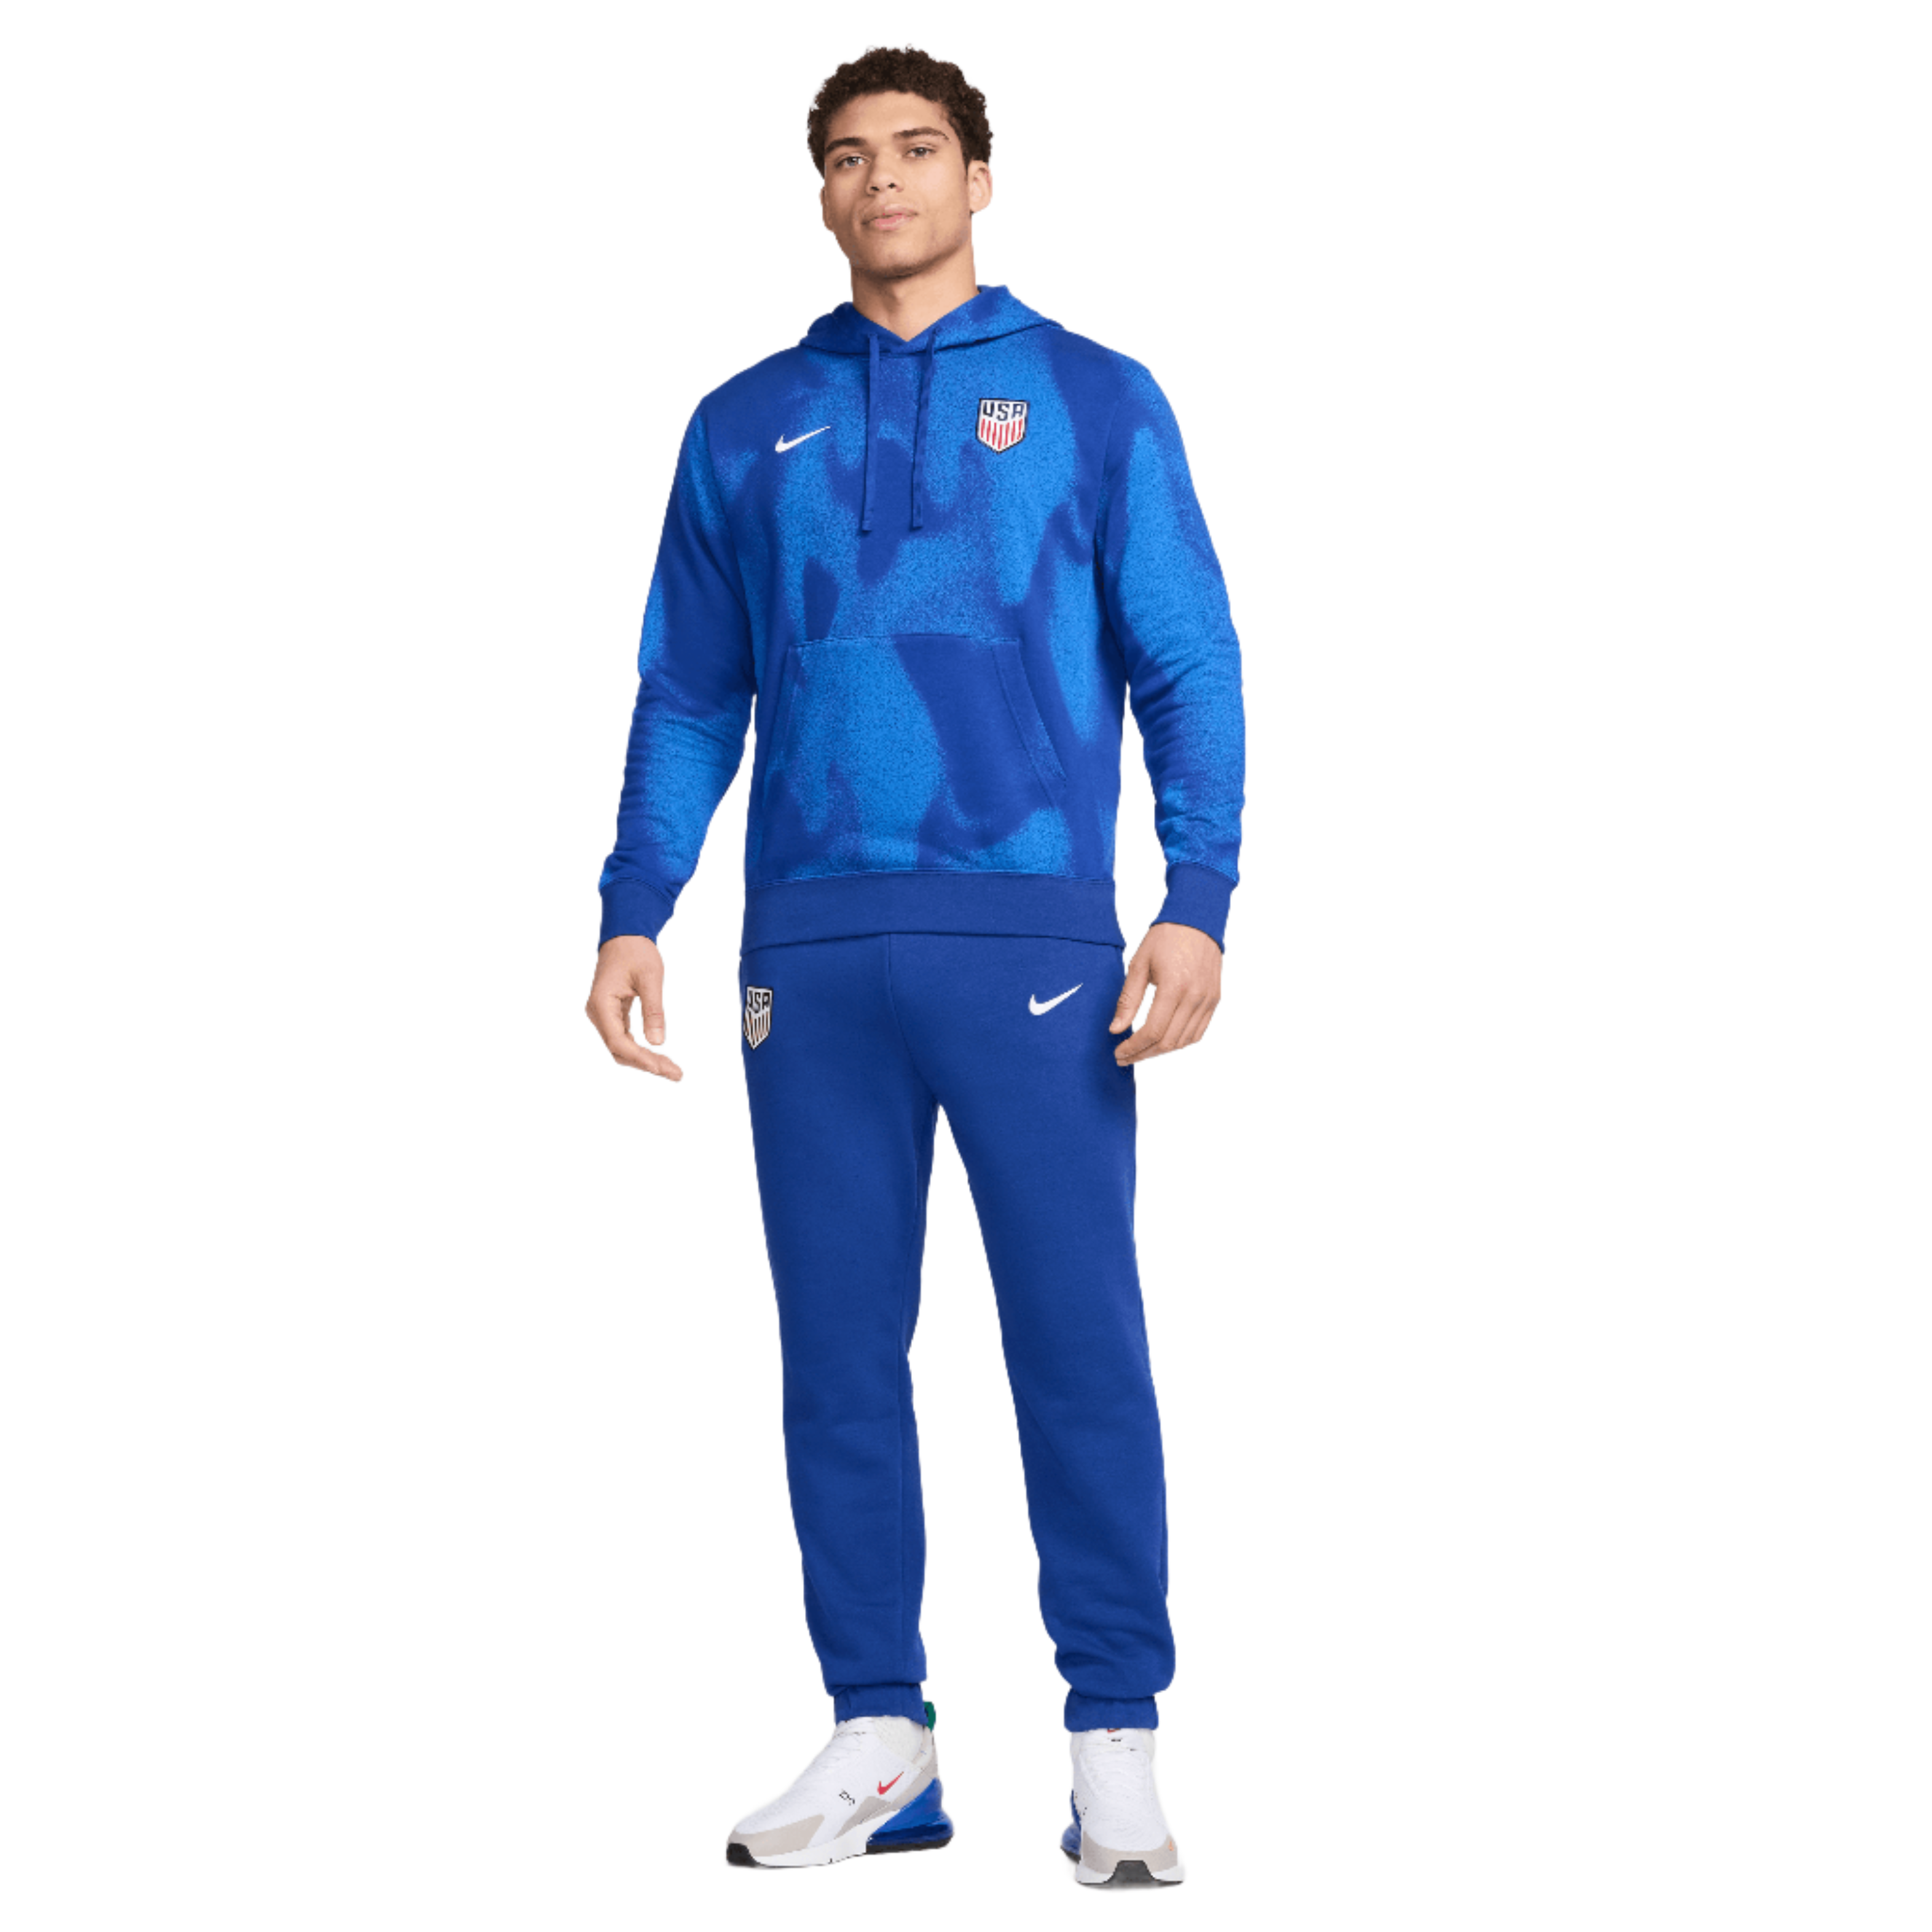 Nike U.S. Club  Men's Pullover Soccer Hoodie